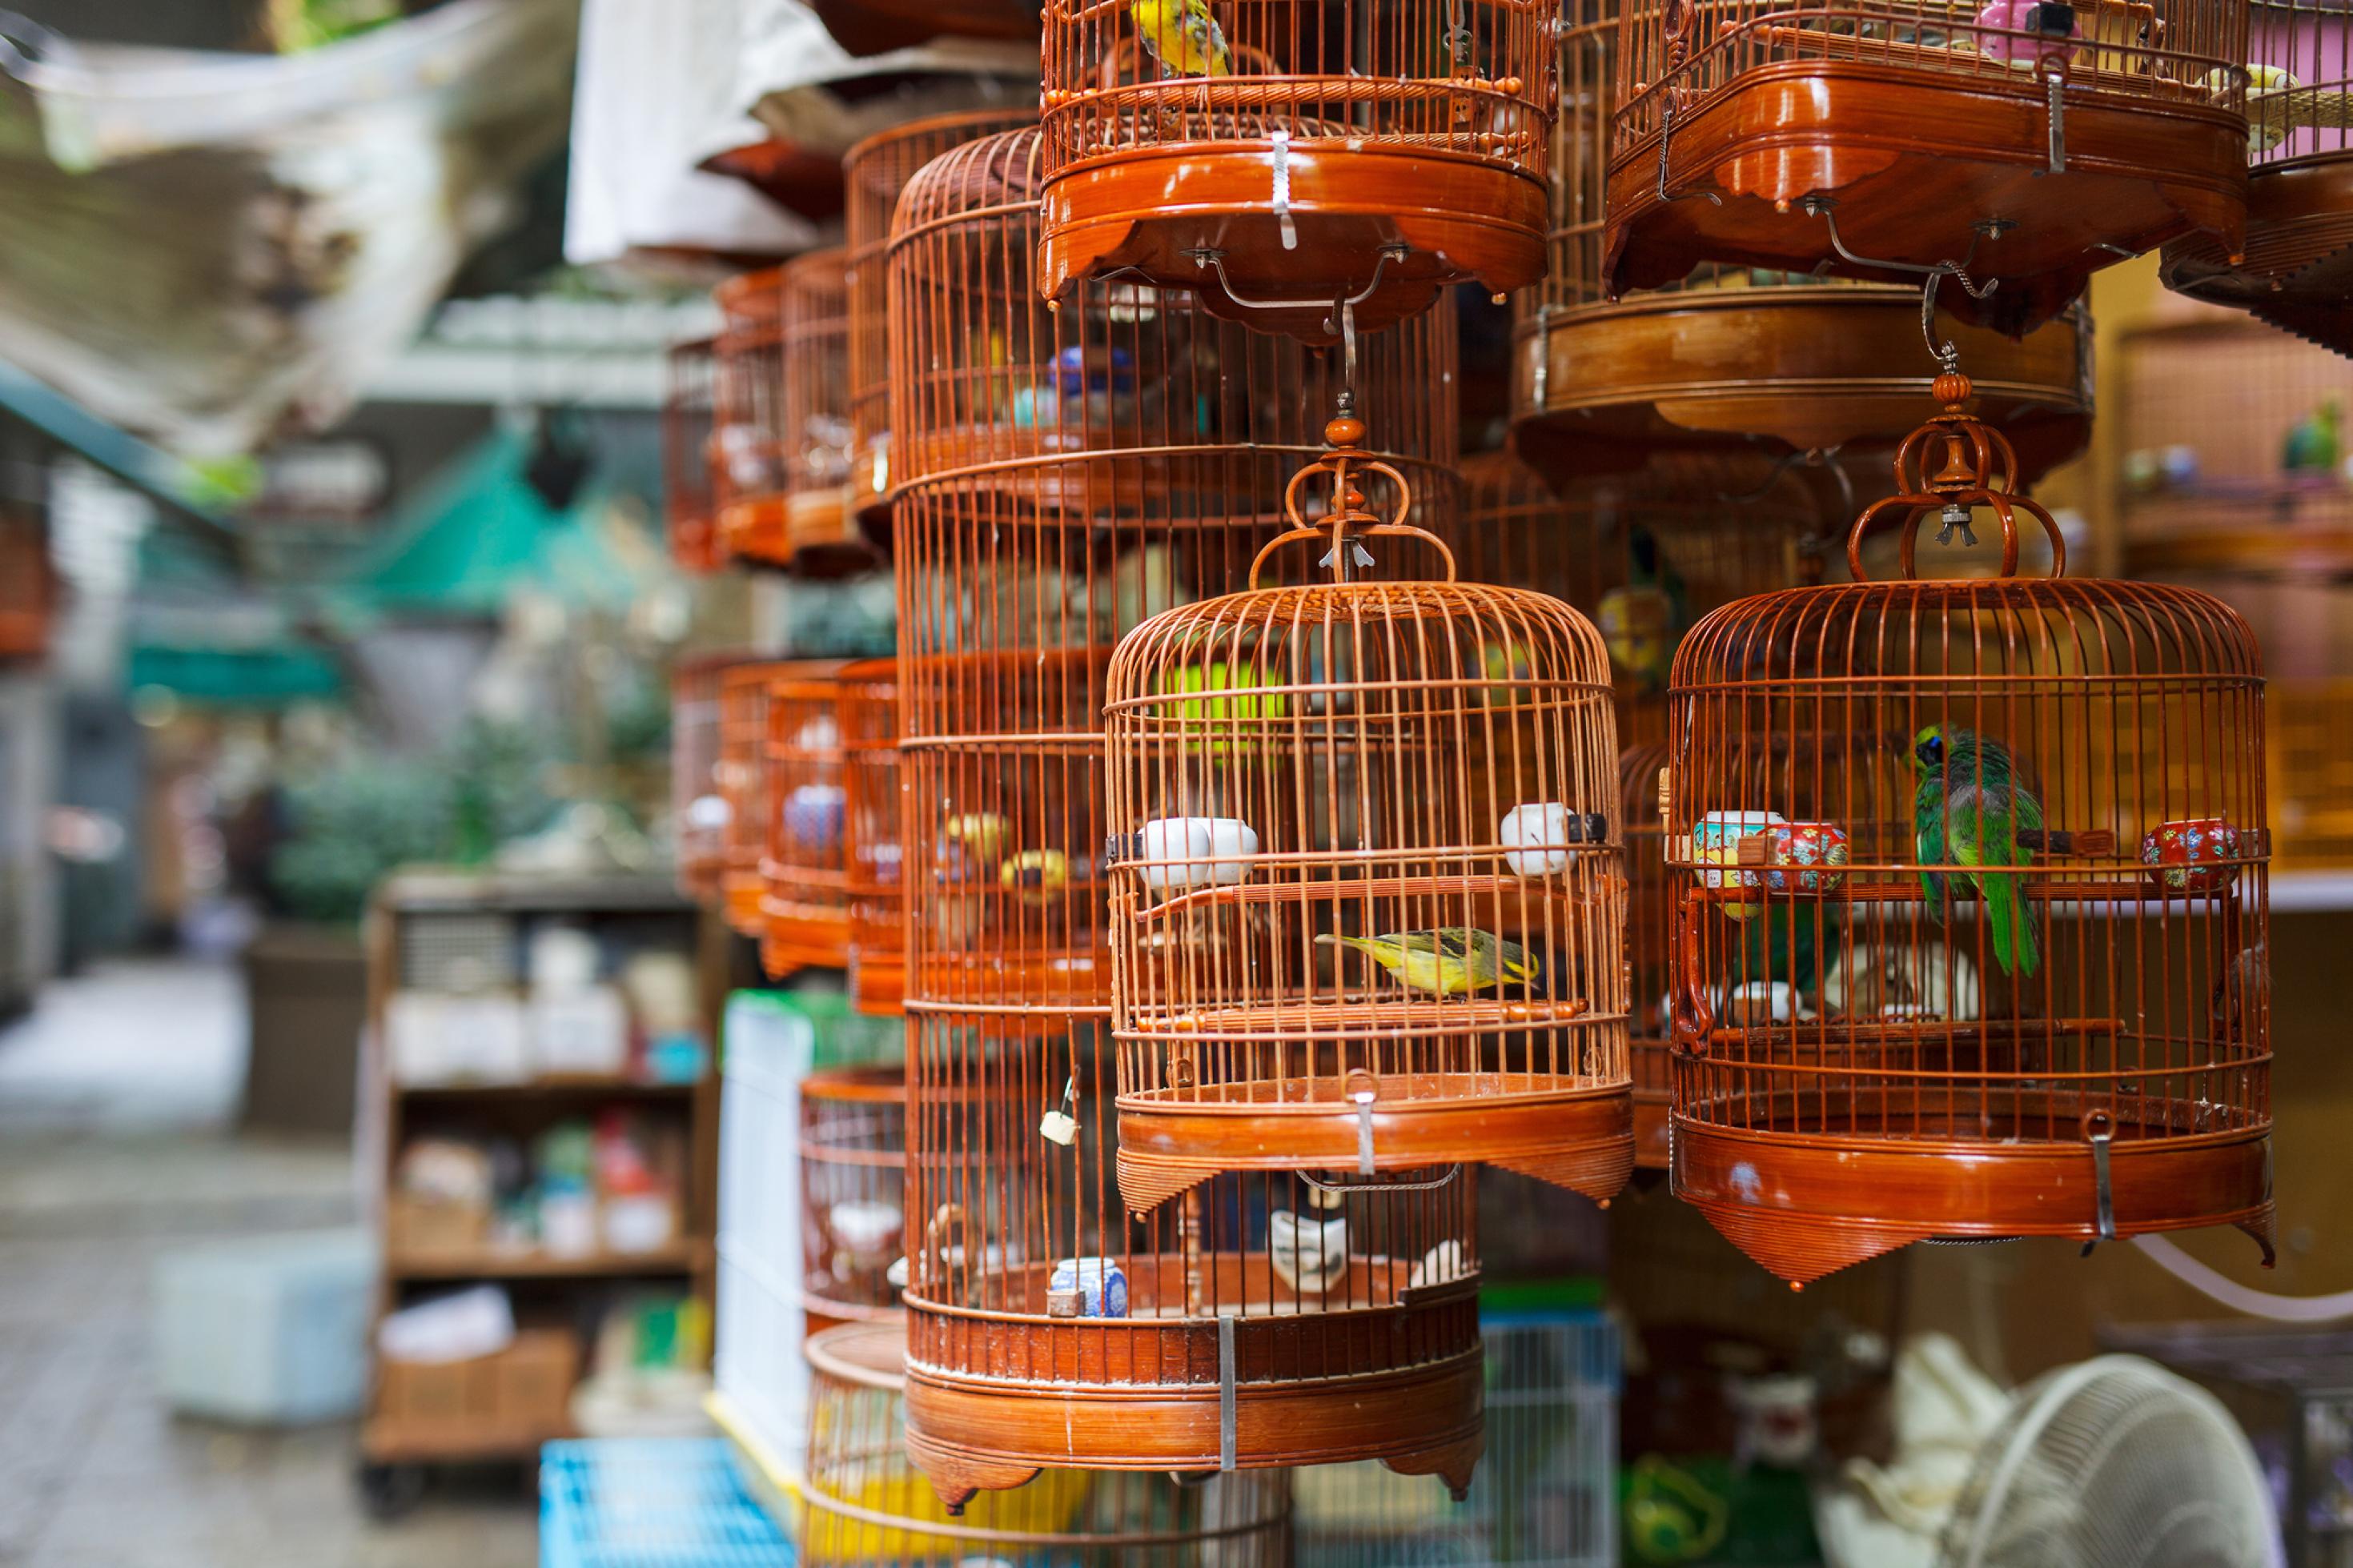 Das Bild zeigt einen Vogelmarkt in Hongkong. In zahlreichen kleinen Käfigen sind gefangene Vögel zu sehen.